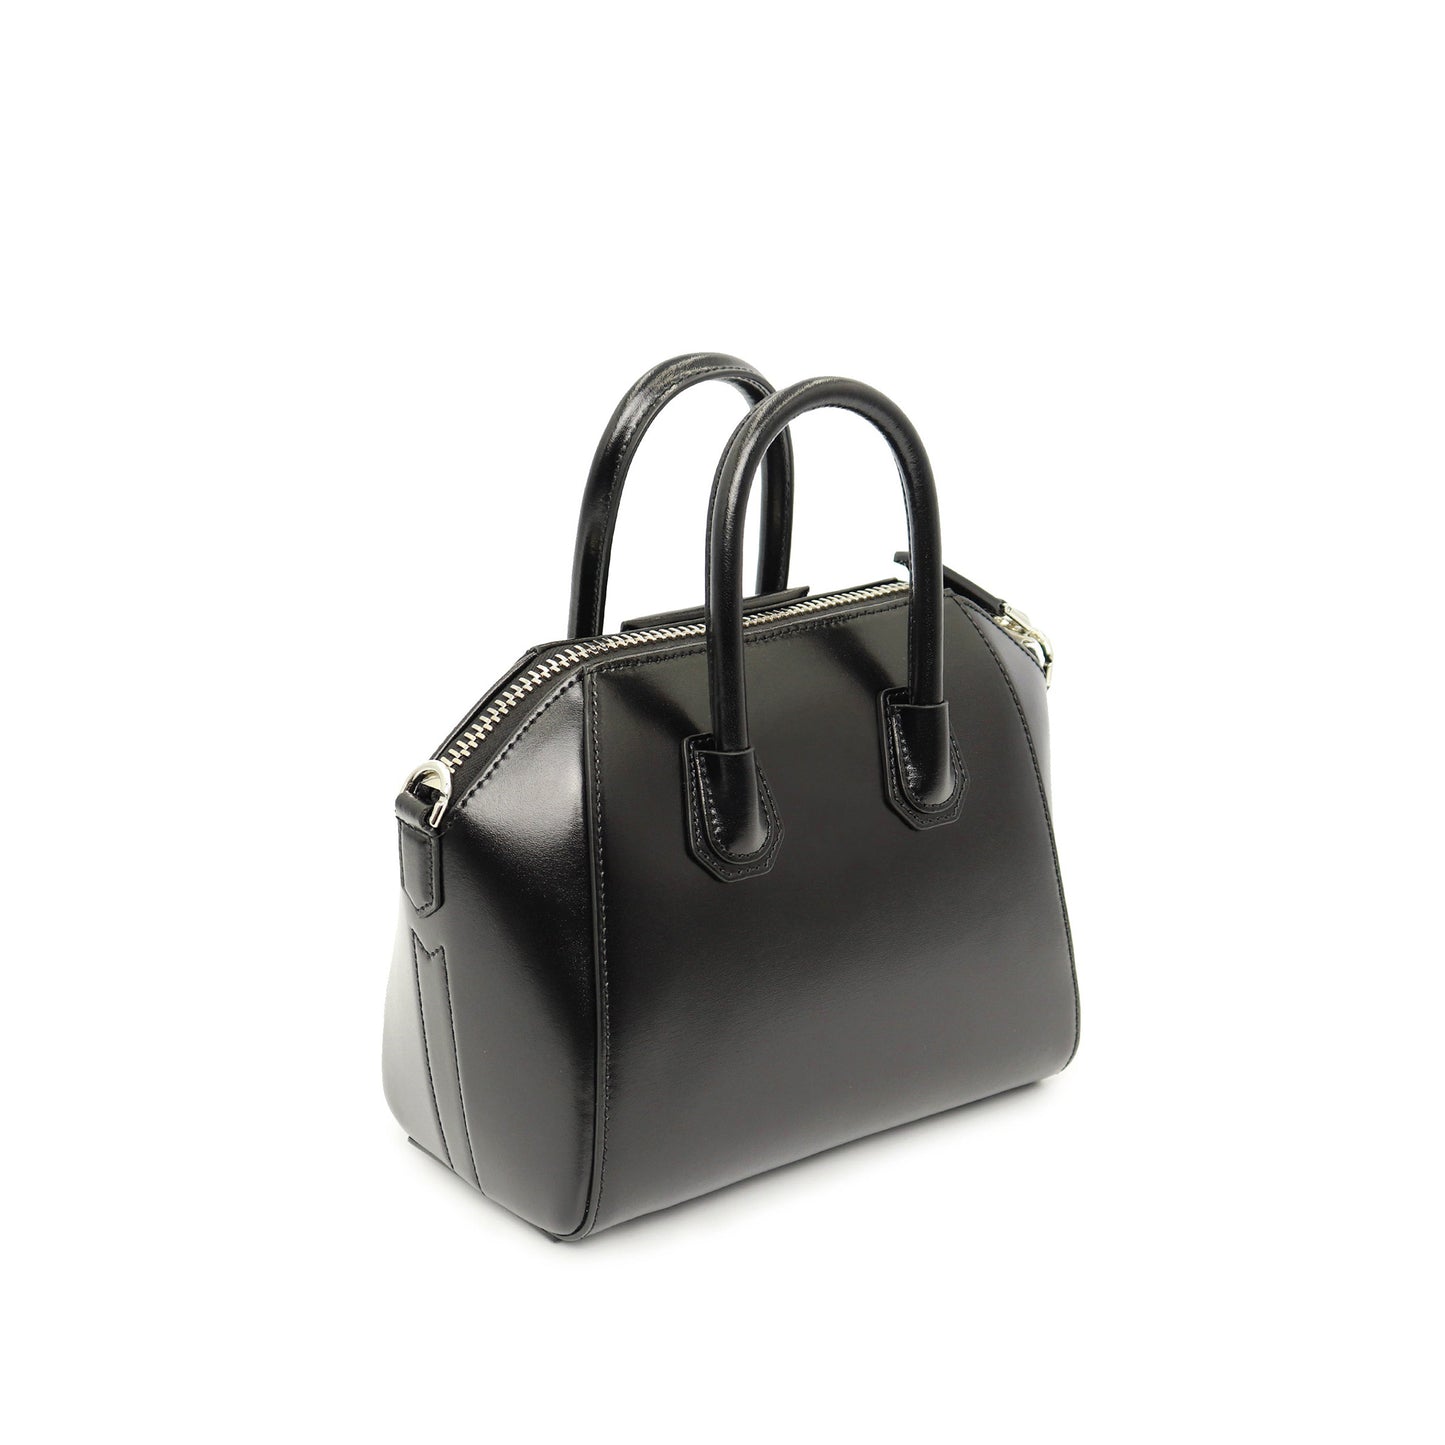 Mini Antigona Bag in Box Leather in Black